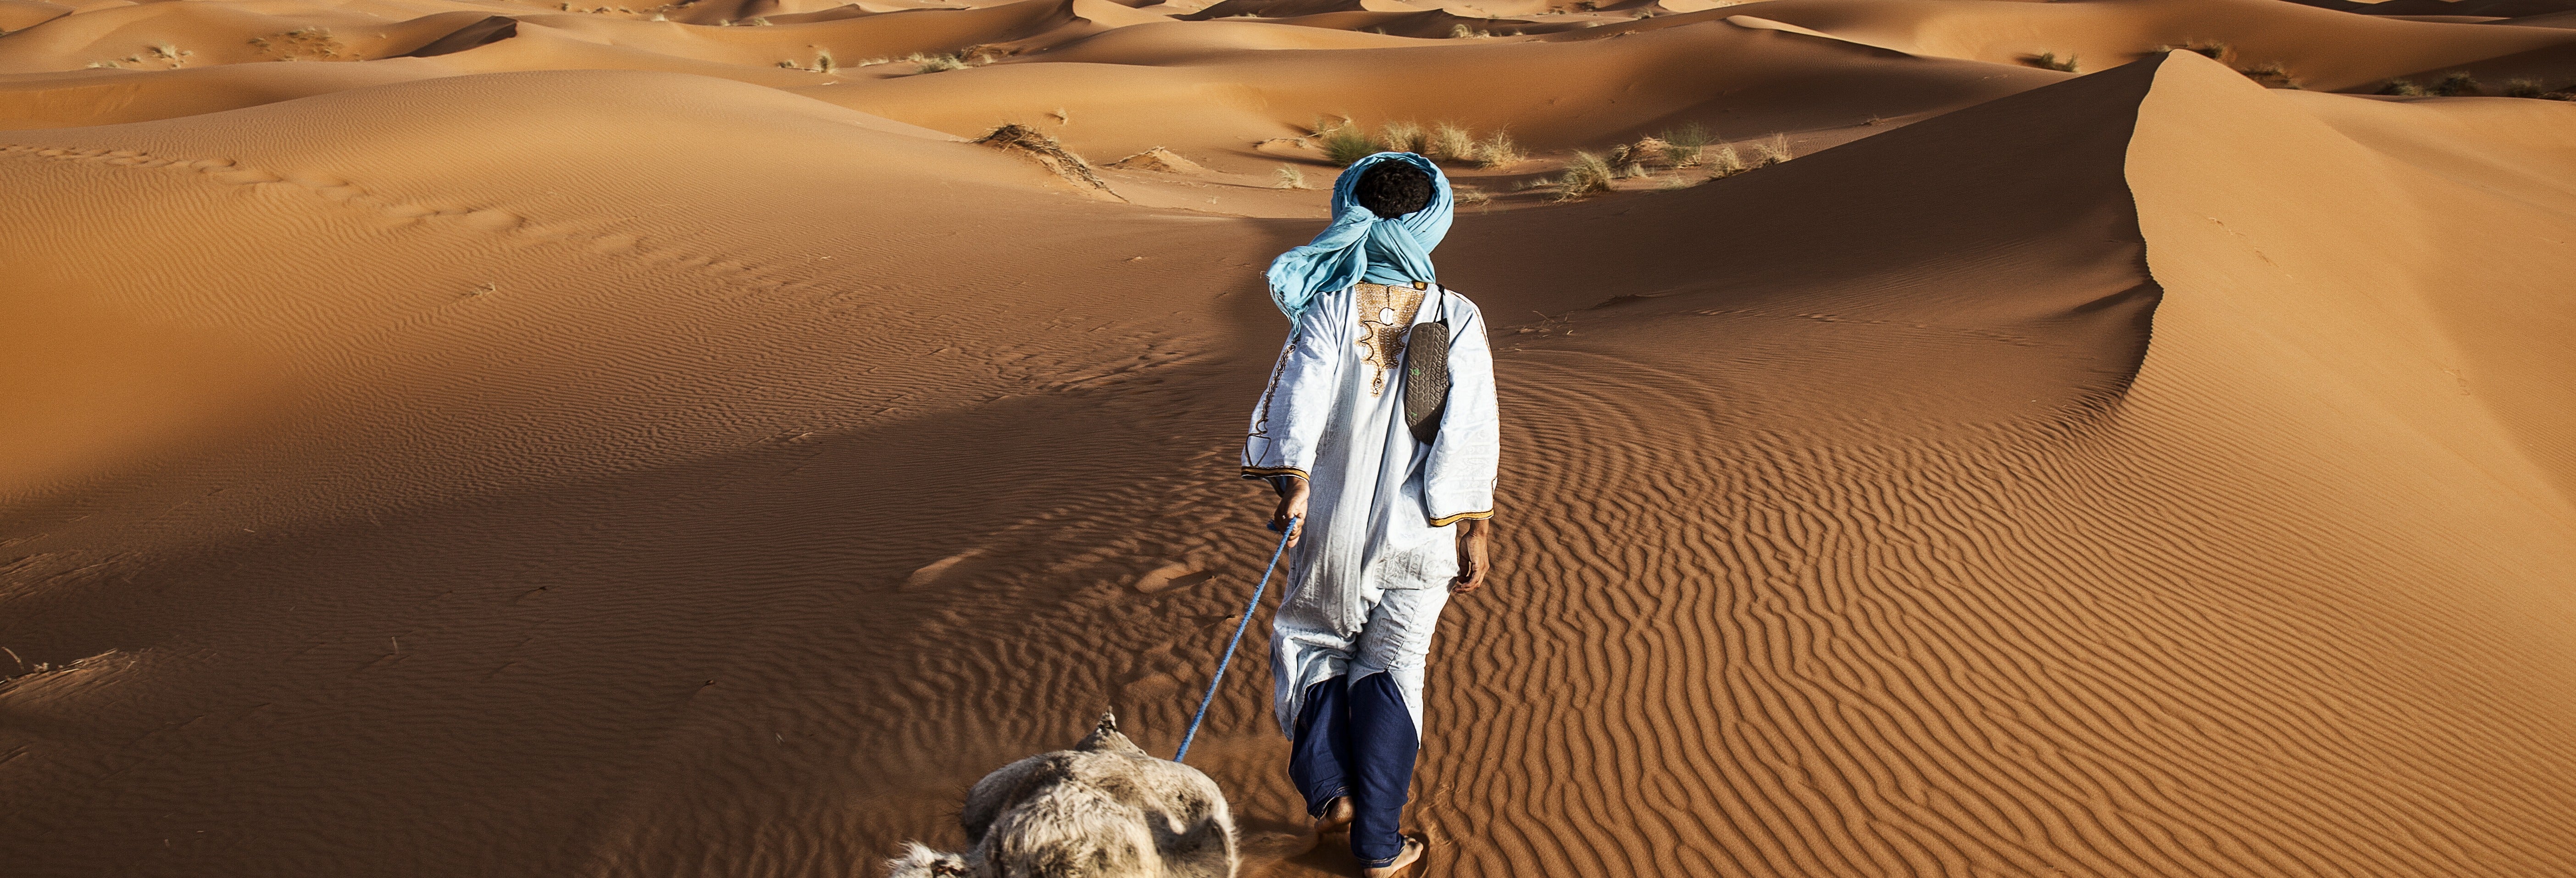 Excursão de 3 dias ao deserto de Merzouga